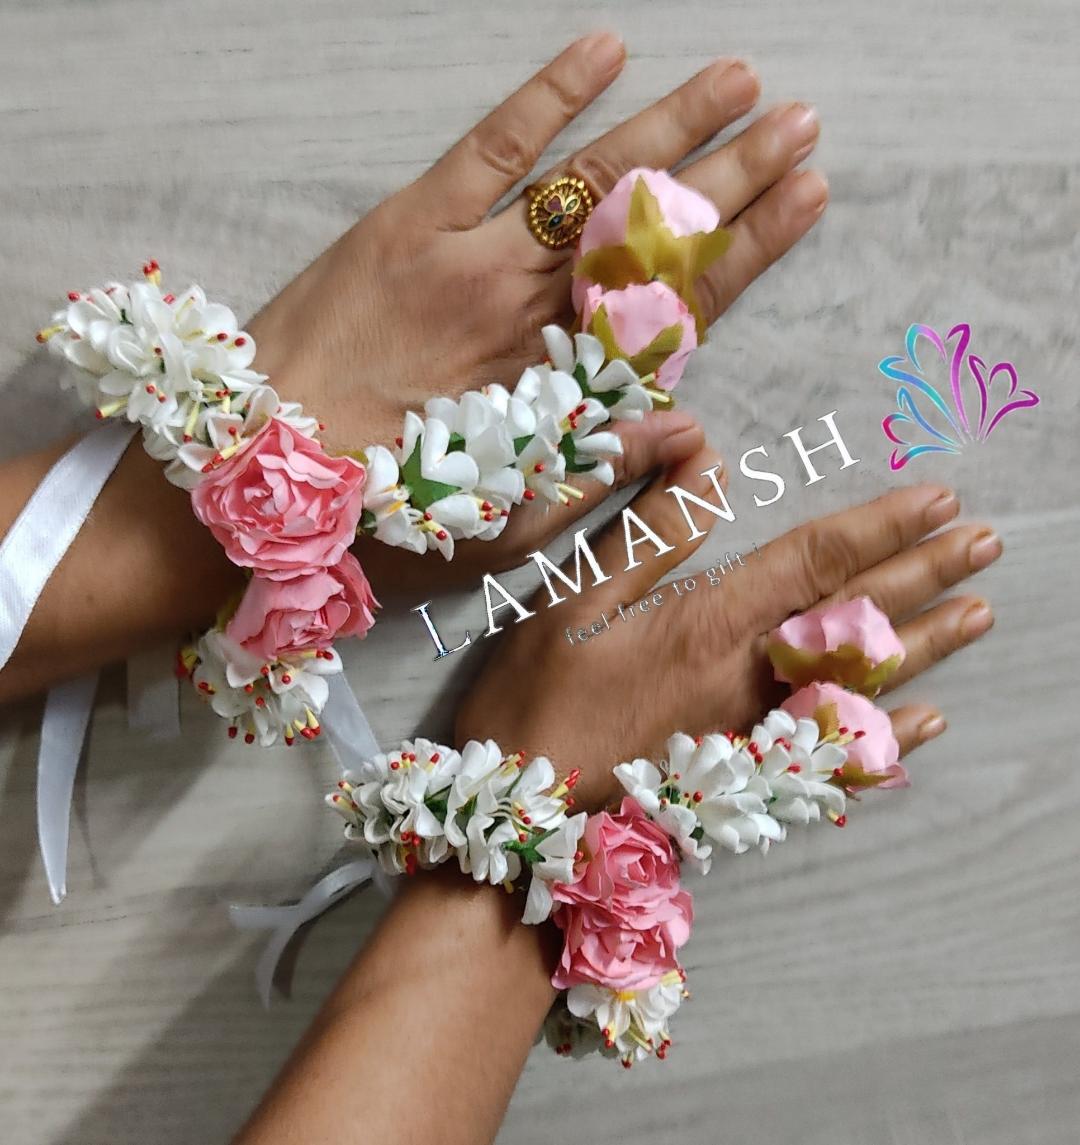 Lamansh Ring Set White - Pink / Artificial flowers / Haldi ,Wedding, Engagement Lamansh™ Floral Ring Bracelet Set for Engagement / Haldi / Floral Accessories set